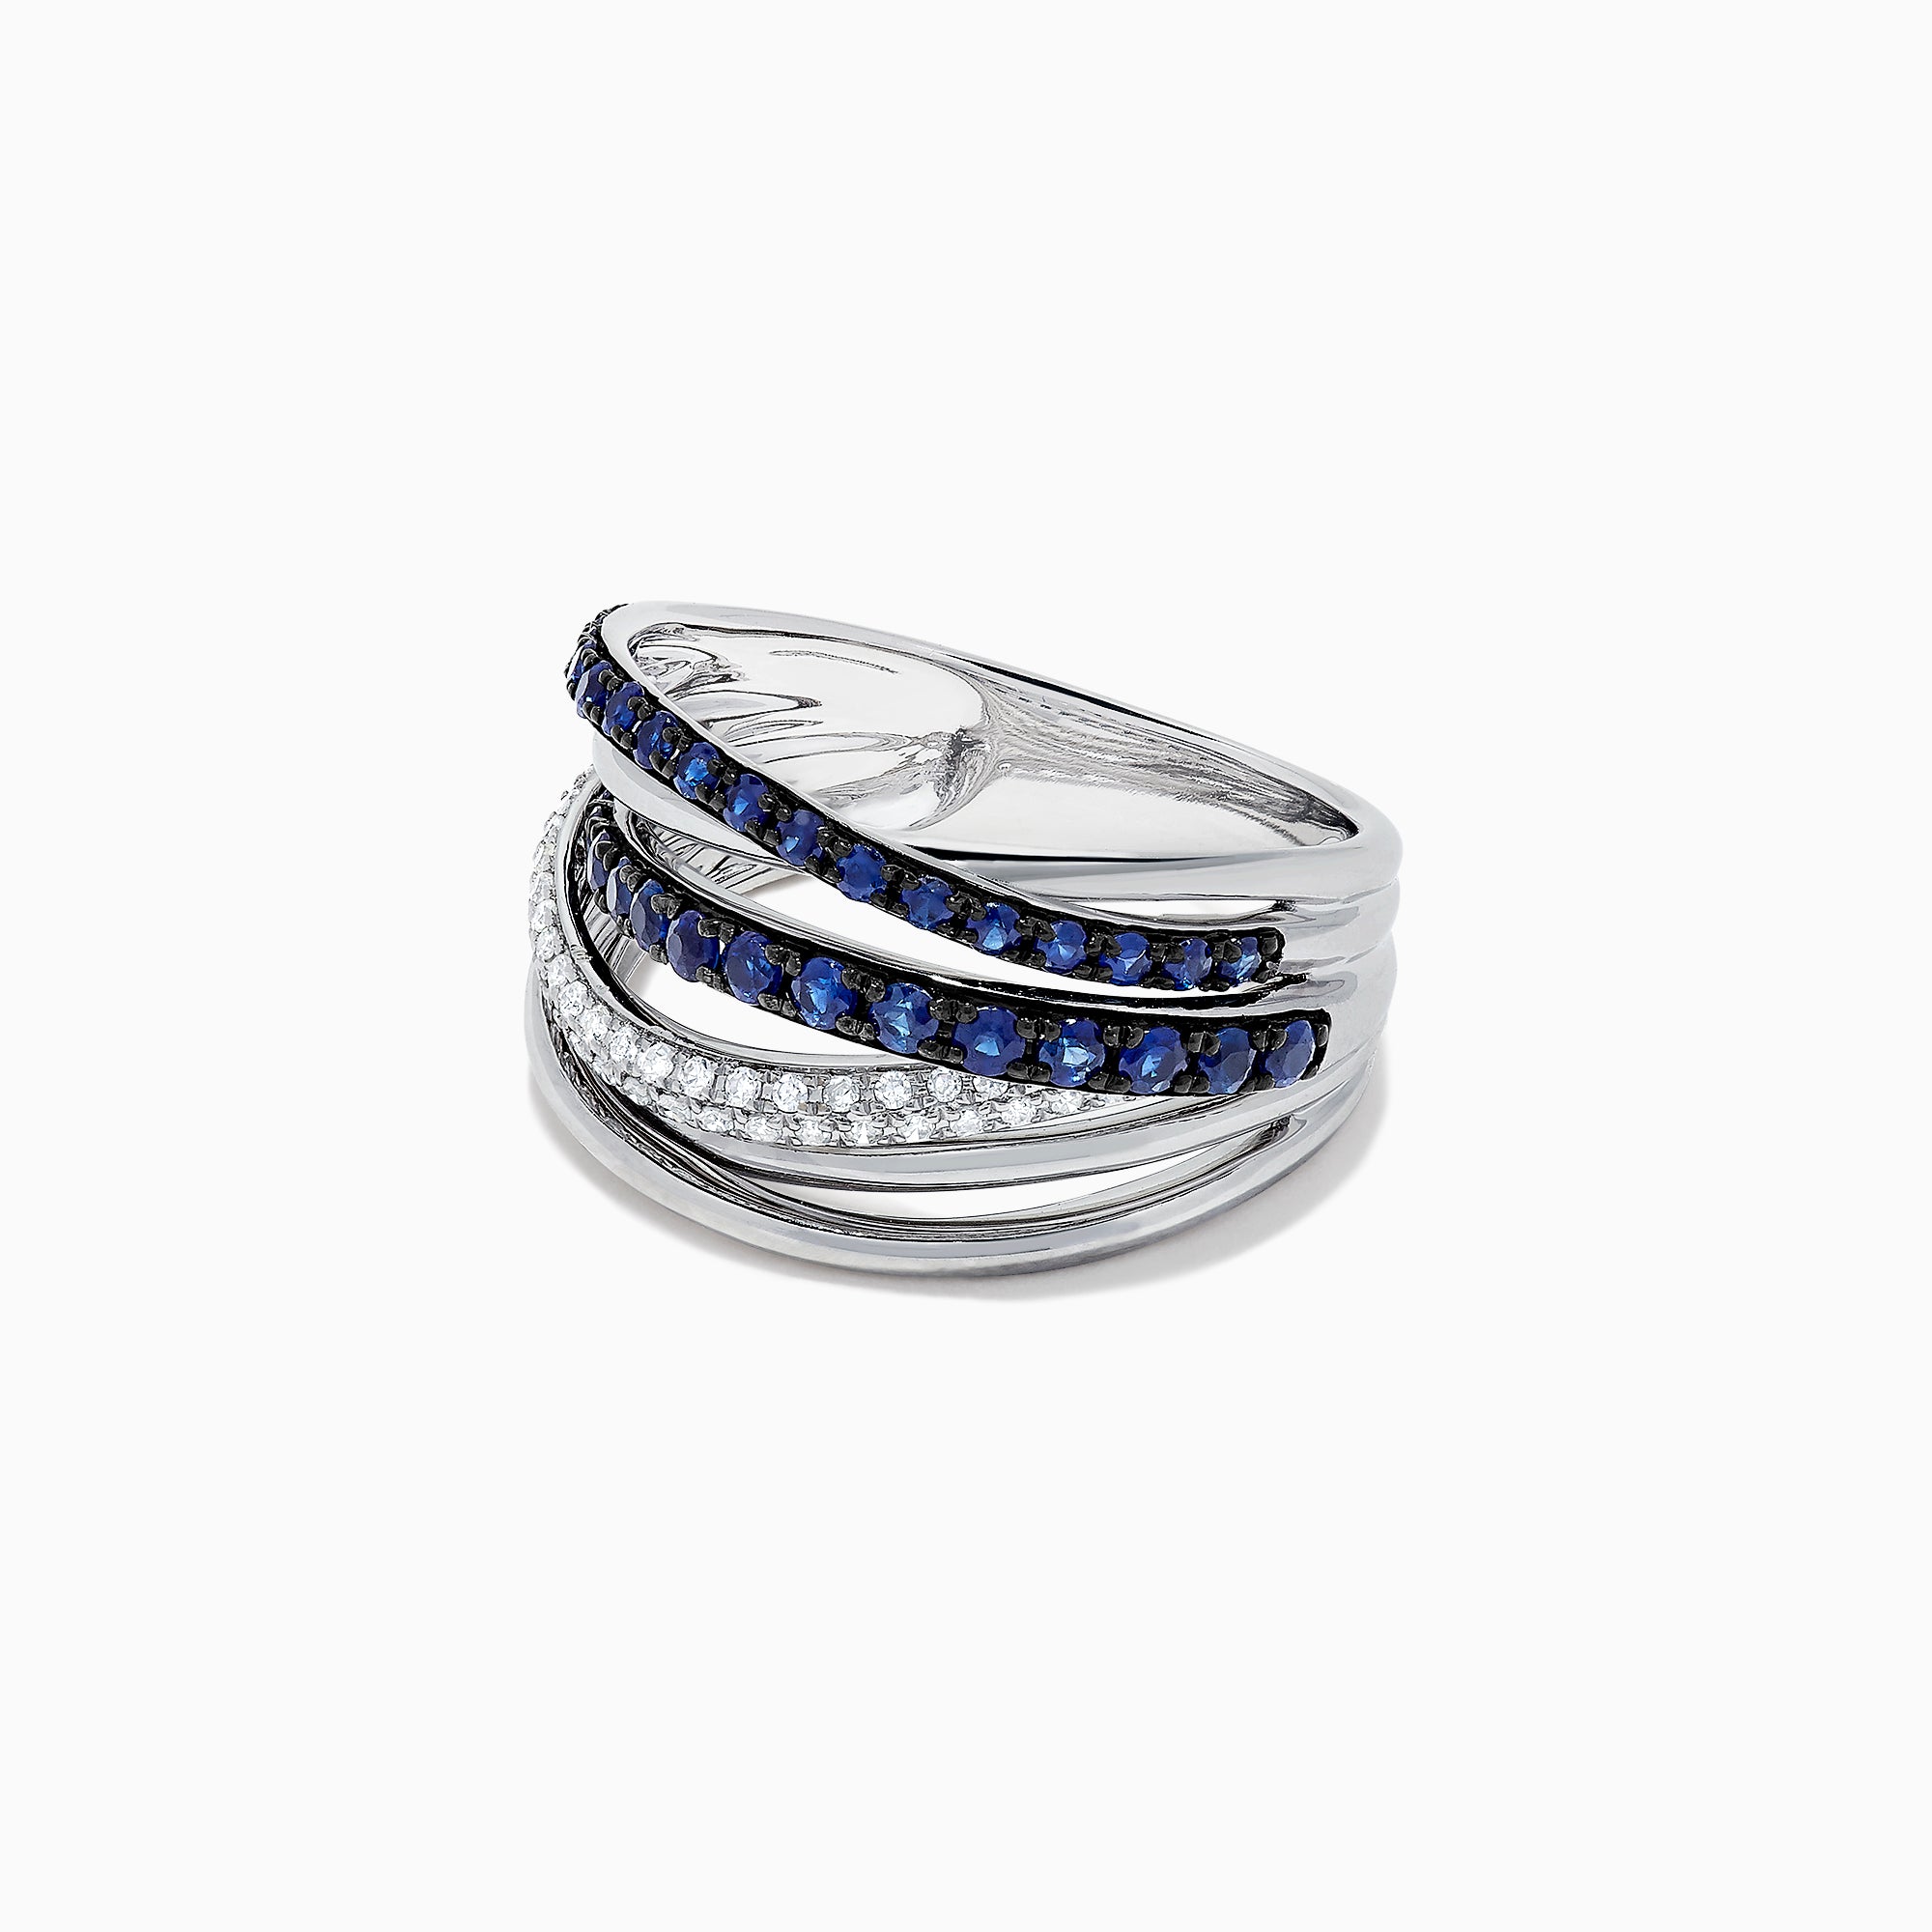 Effy Royale Bleu 14K White Gold Blue Sapphire & Diamond Ring, 0.91 TCW